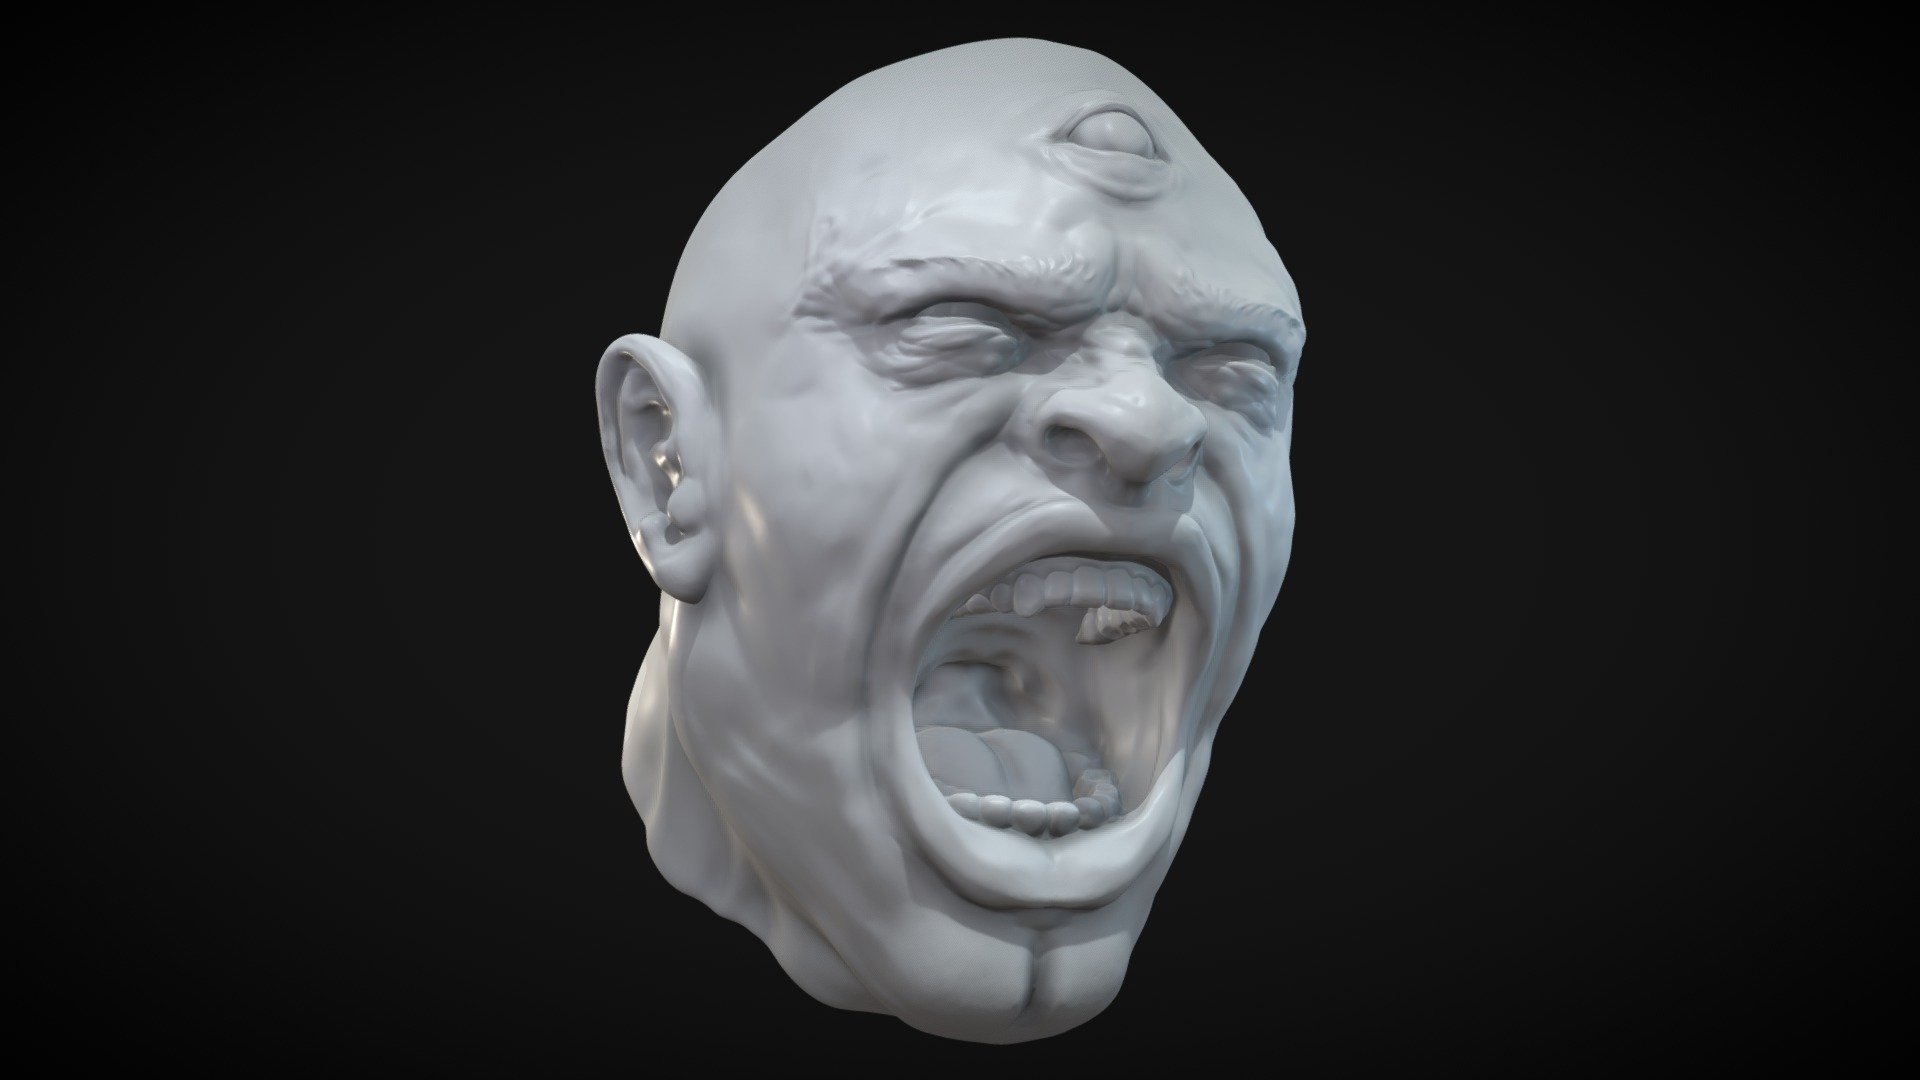 Mad Man Head Sculpt - Mad Man Head Sculpt - Buy Royalty Free 3D model by sketchzombie 3d model